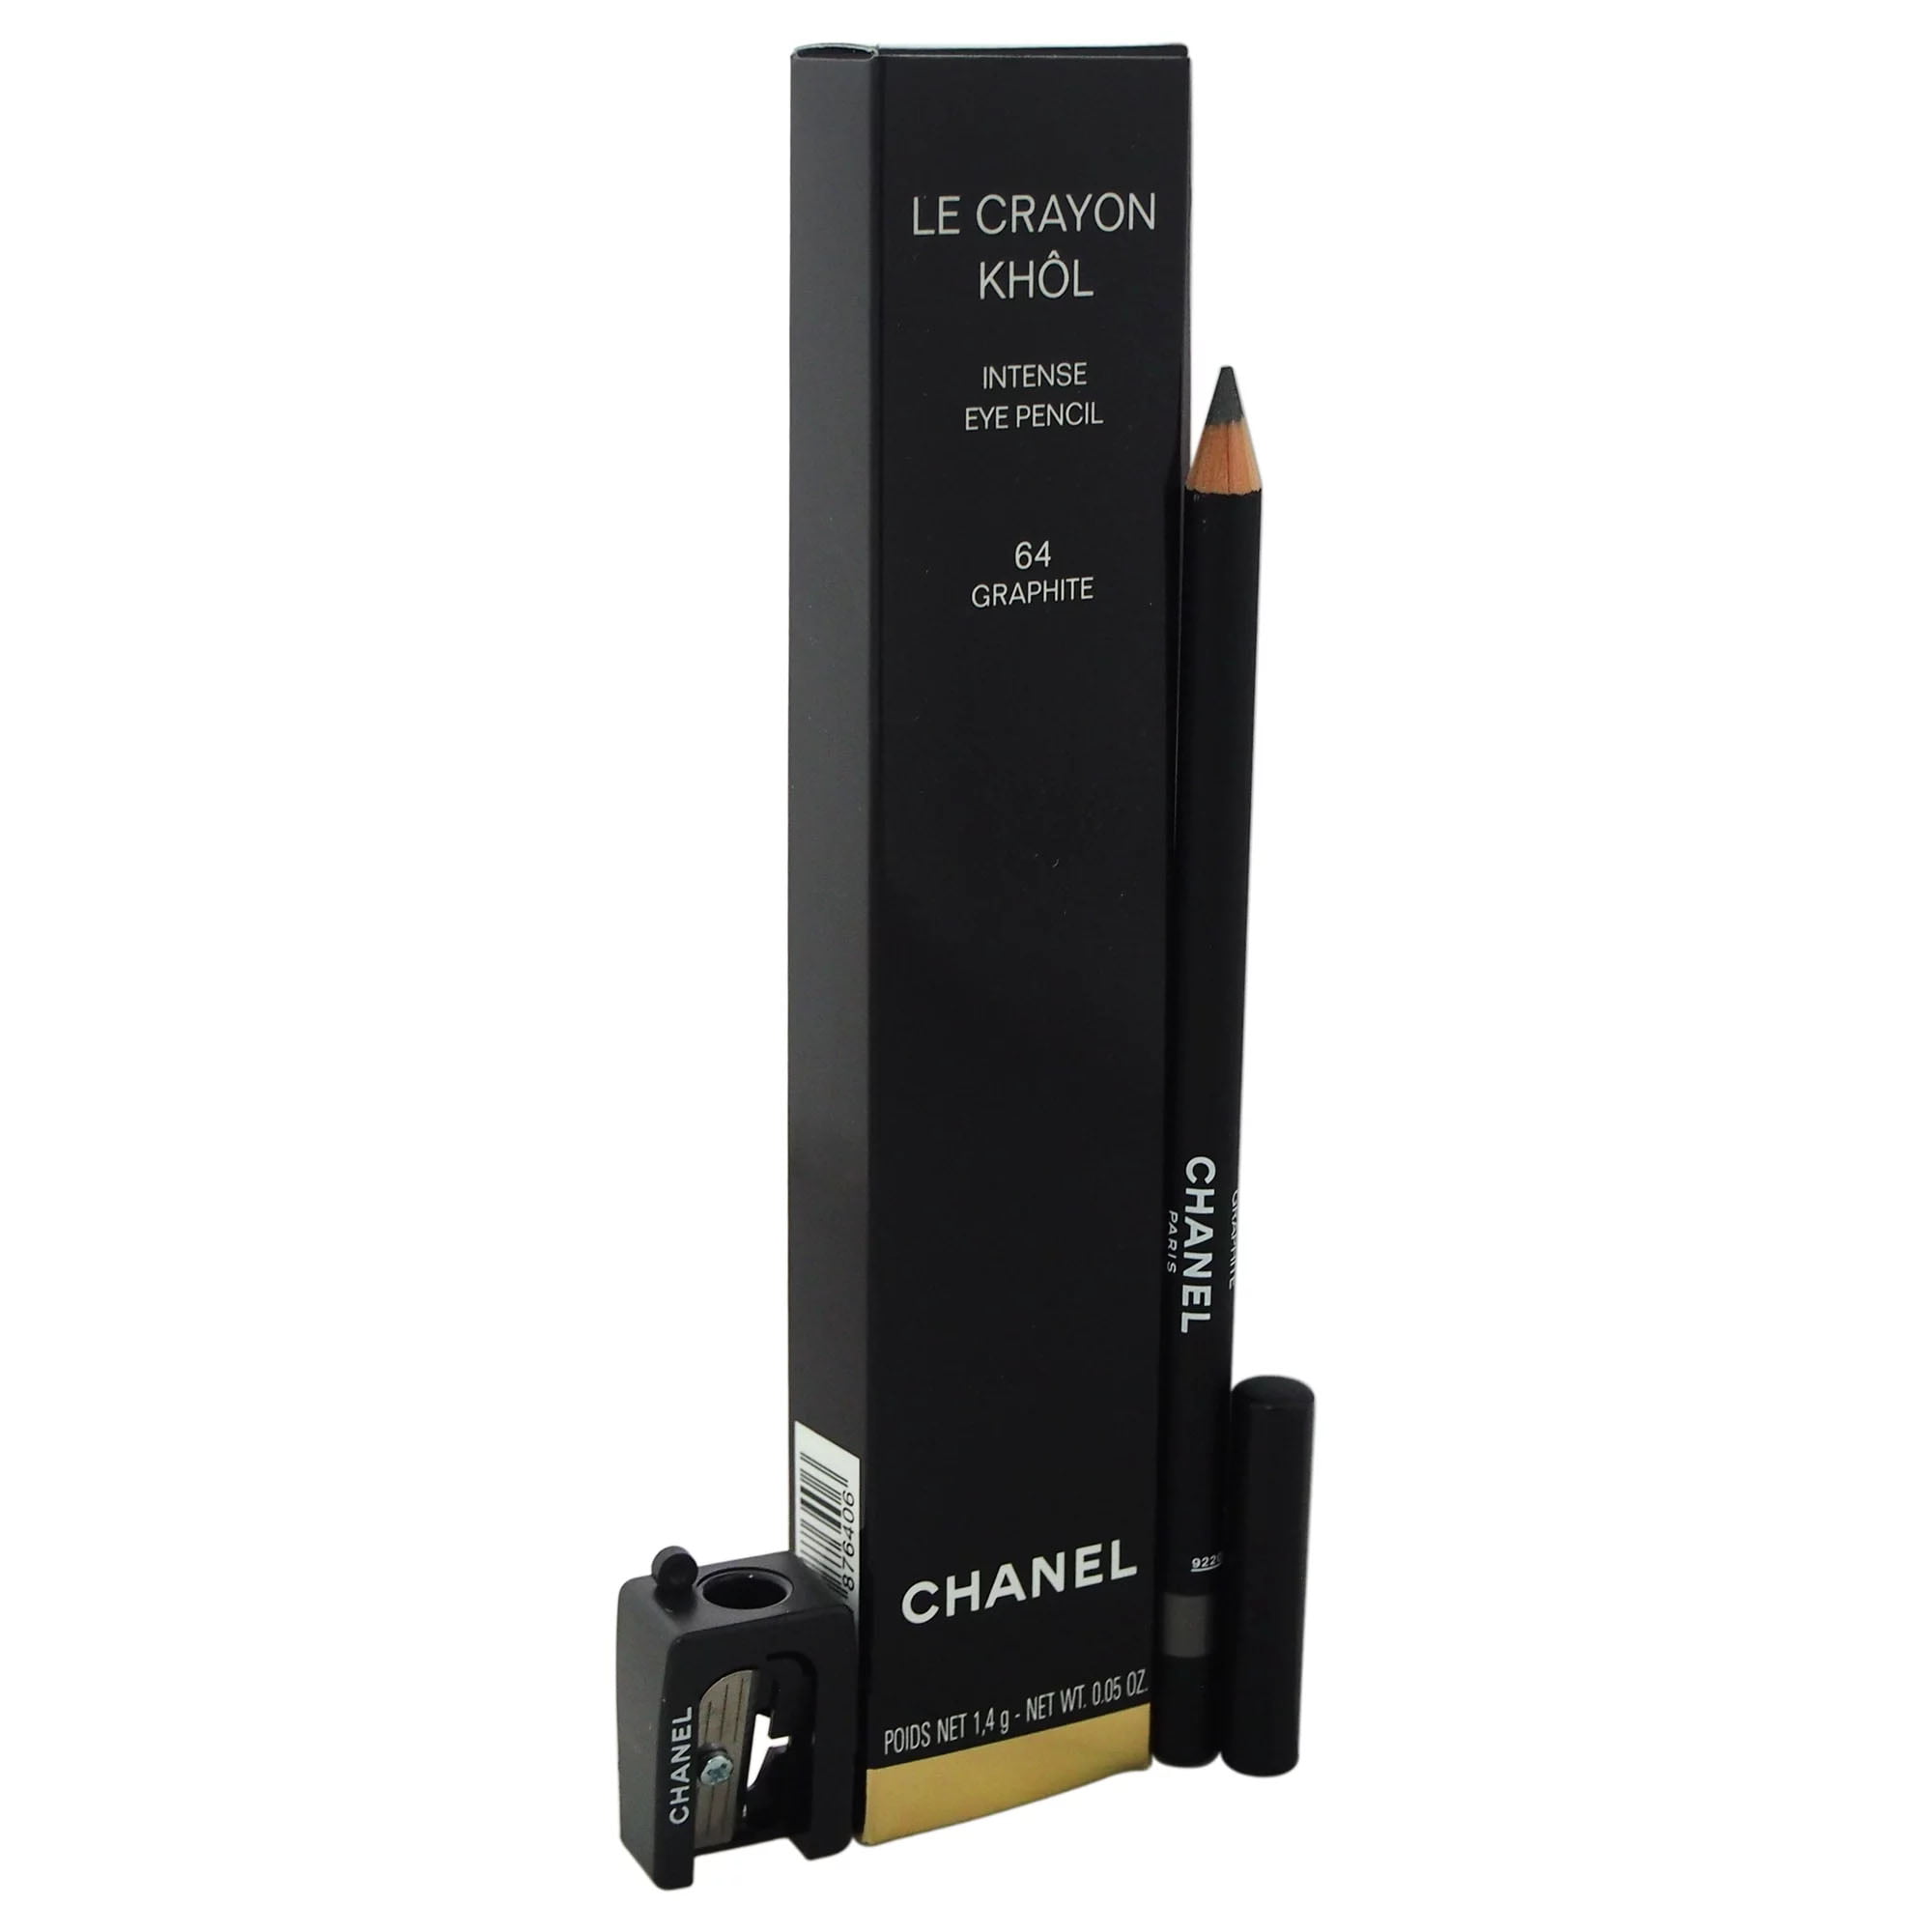 Chanel Le Crayon Khol Intense Eye Pencil #64 Graphite - 1.4 g